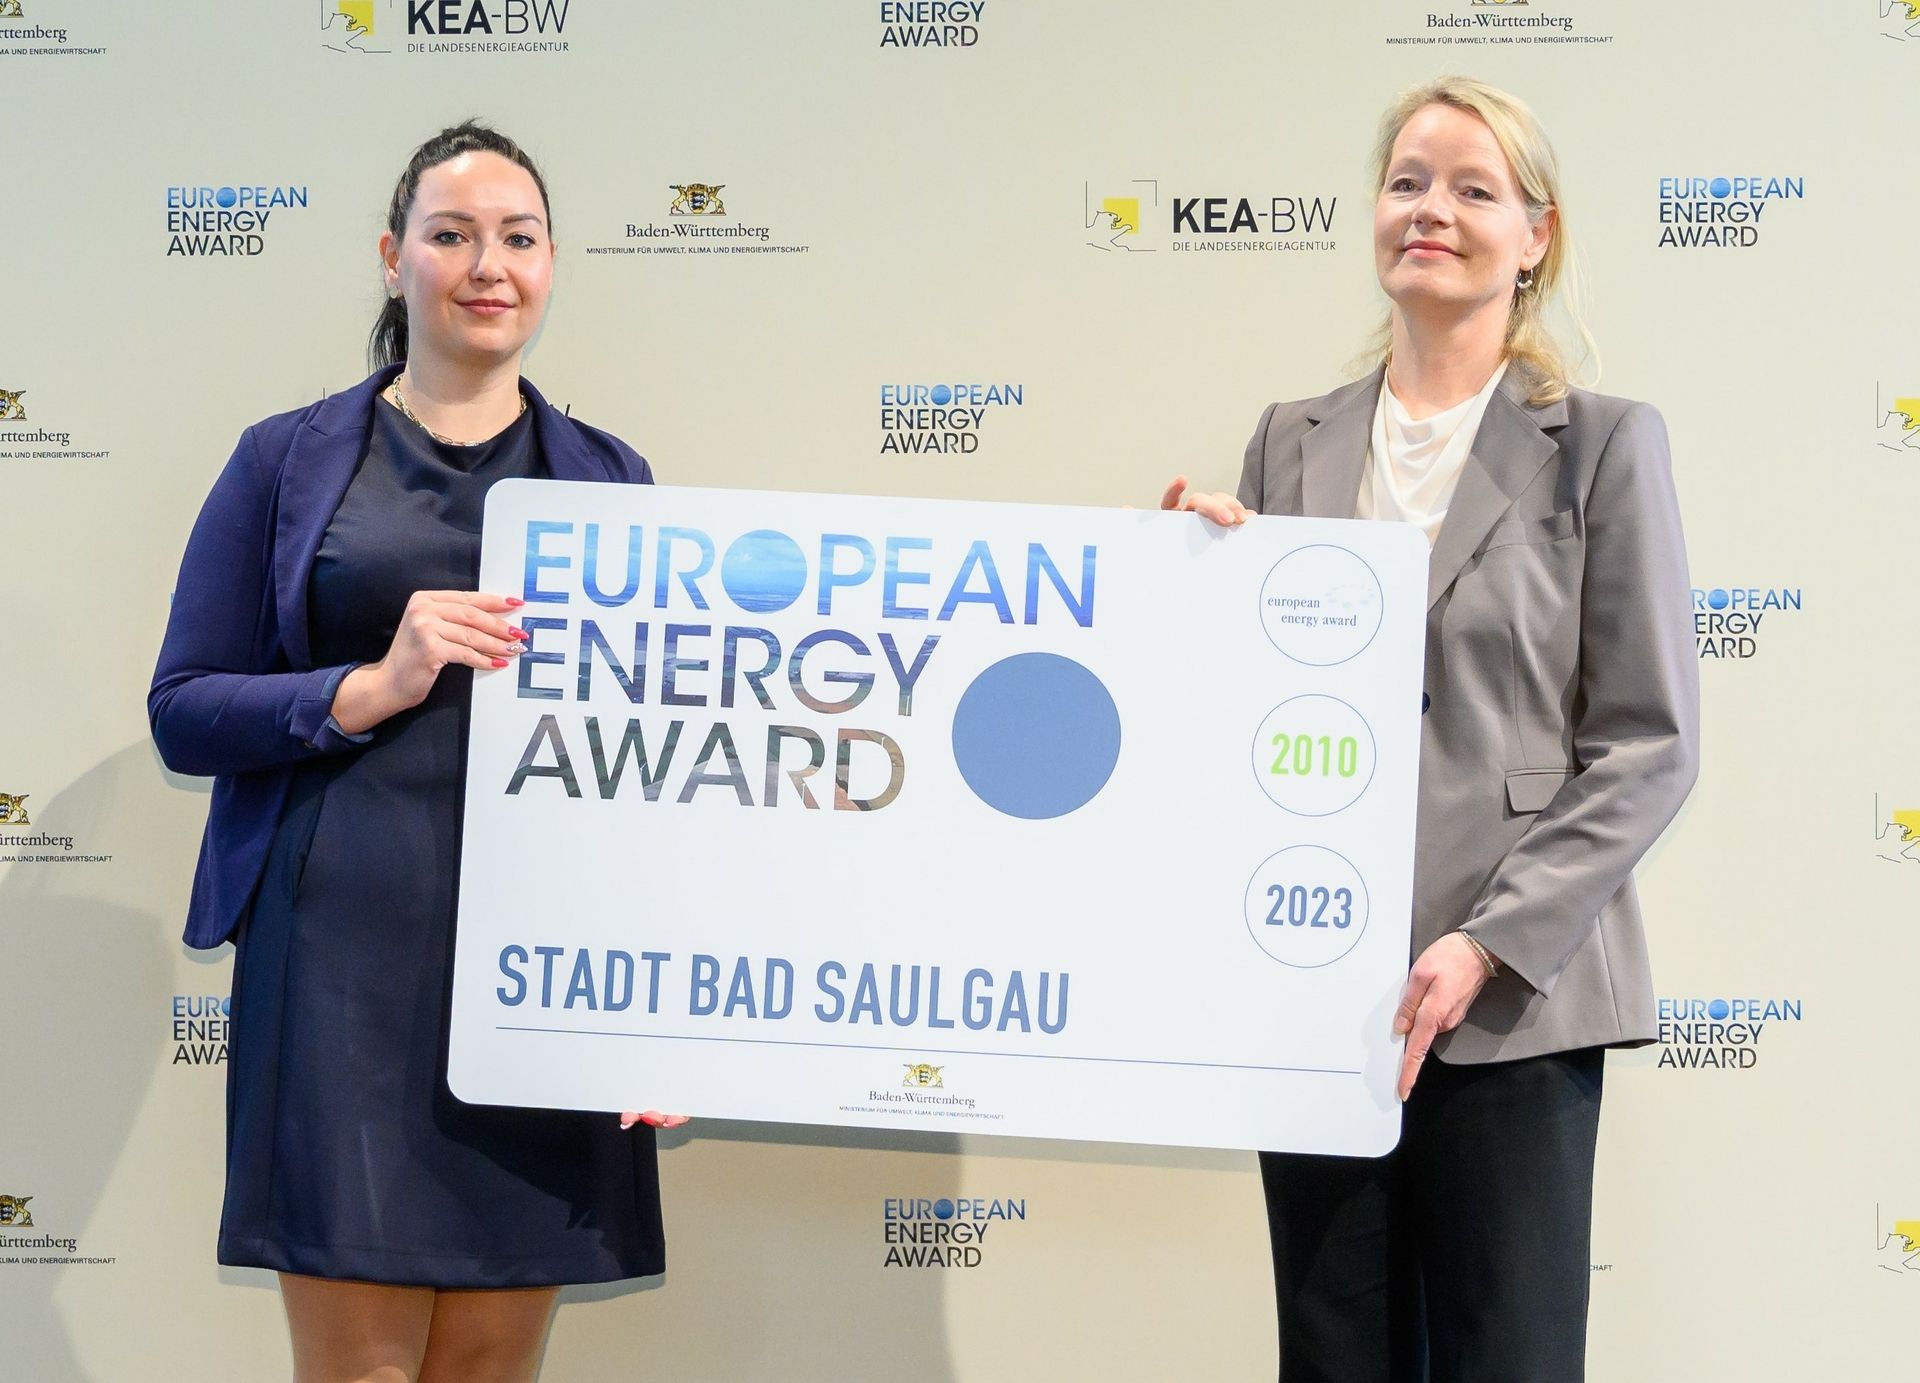 Pauline Klatt (links) ist bei der Stadt Bad Saulgau für den European Energy Award zuständig. Umweltministerin Thekla Walker überreicht ihr bei der Preisverleihung in Karlsruhe die erneute Auszeichnung. Foto: KEA-BW